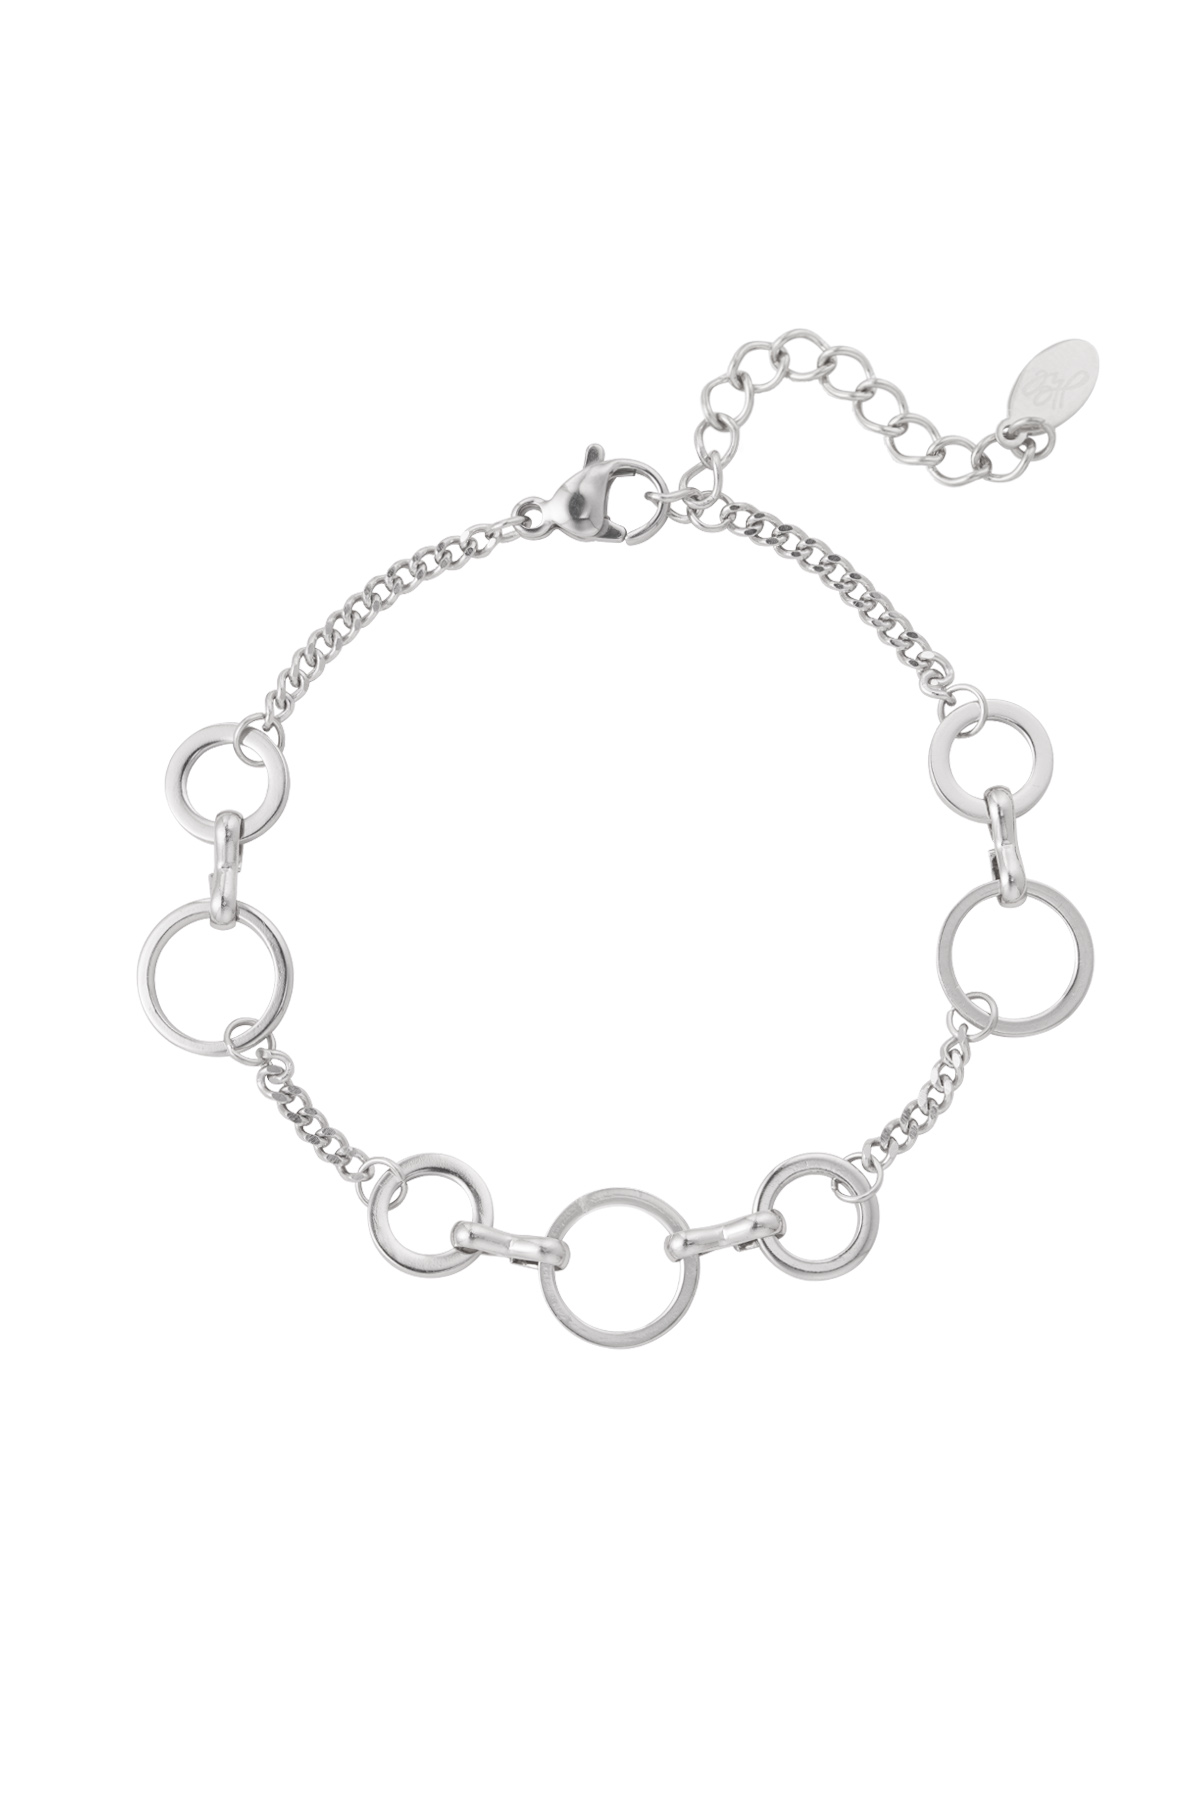 Bracelet circles - silver h5 